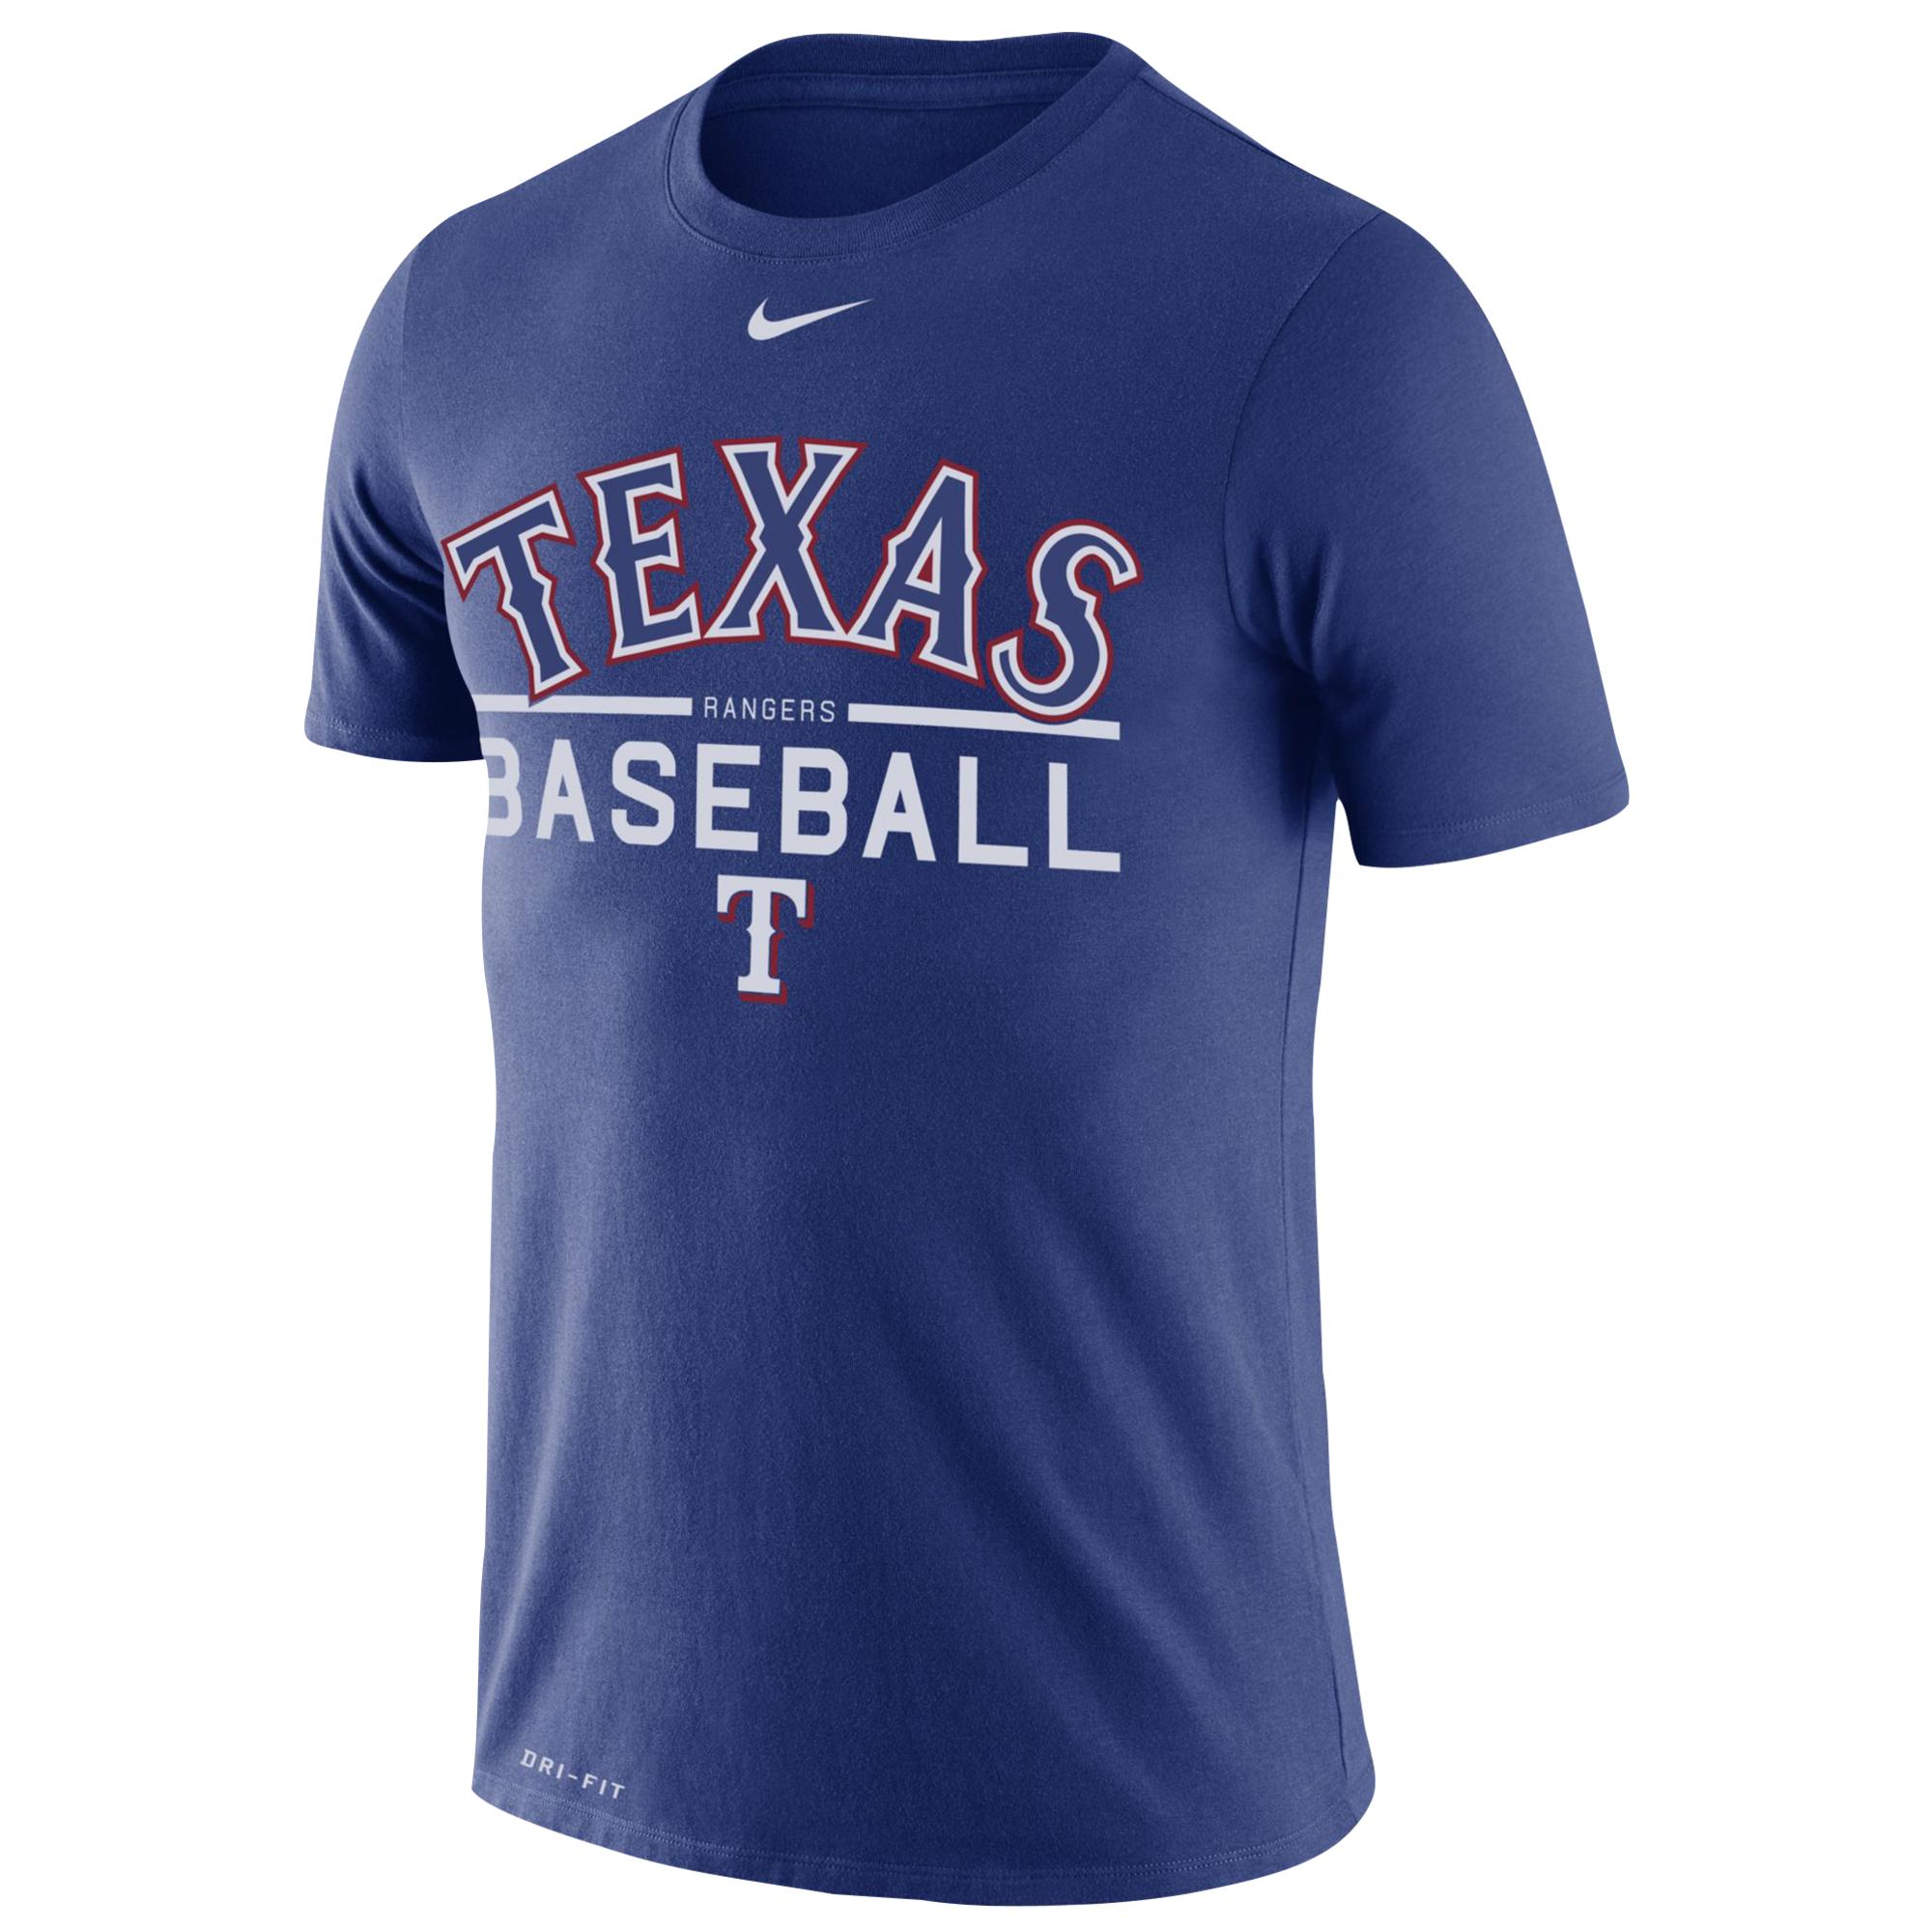 Nike Texas Rangers Mlb Practice T-shirt in Blue for Men - Lyst